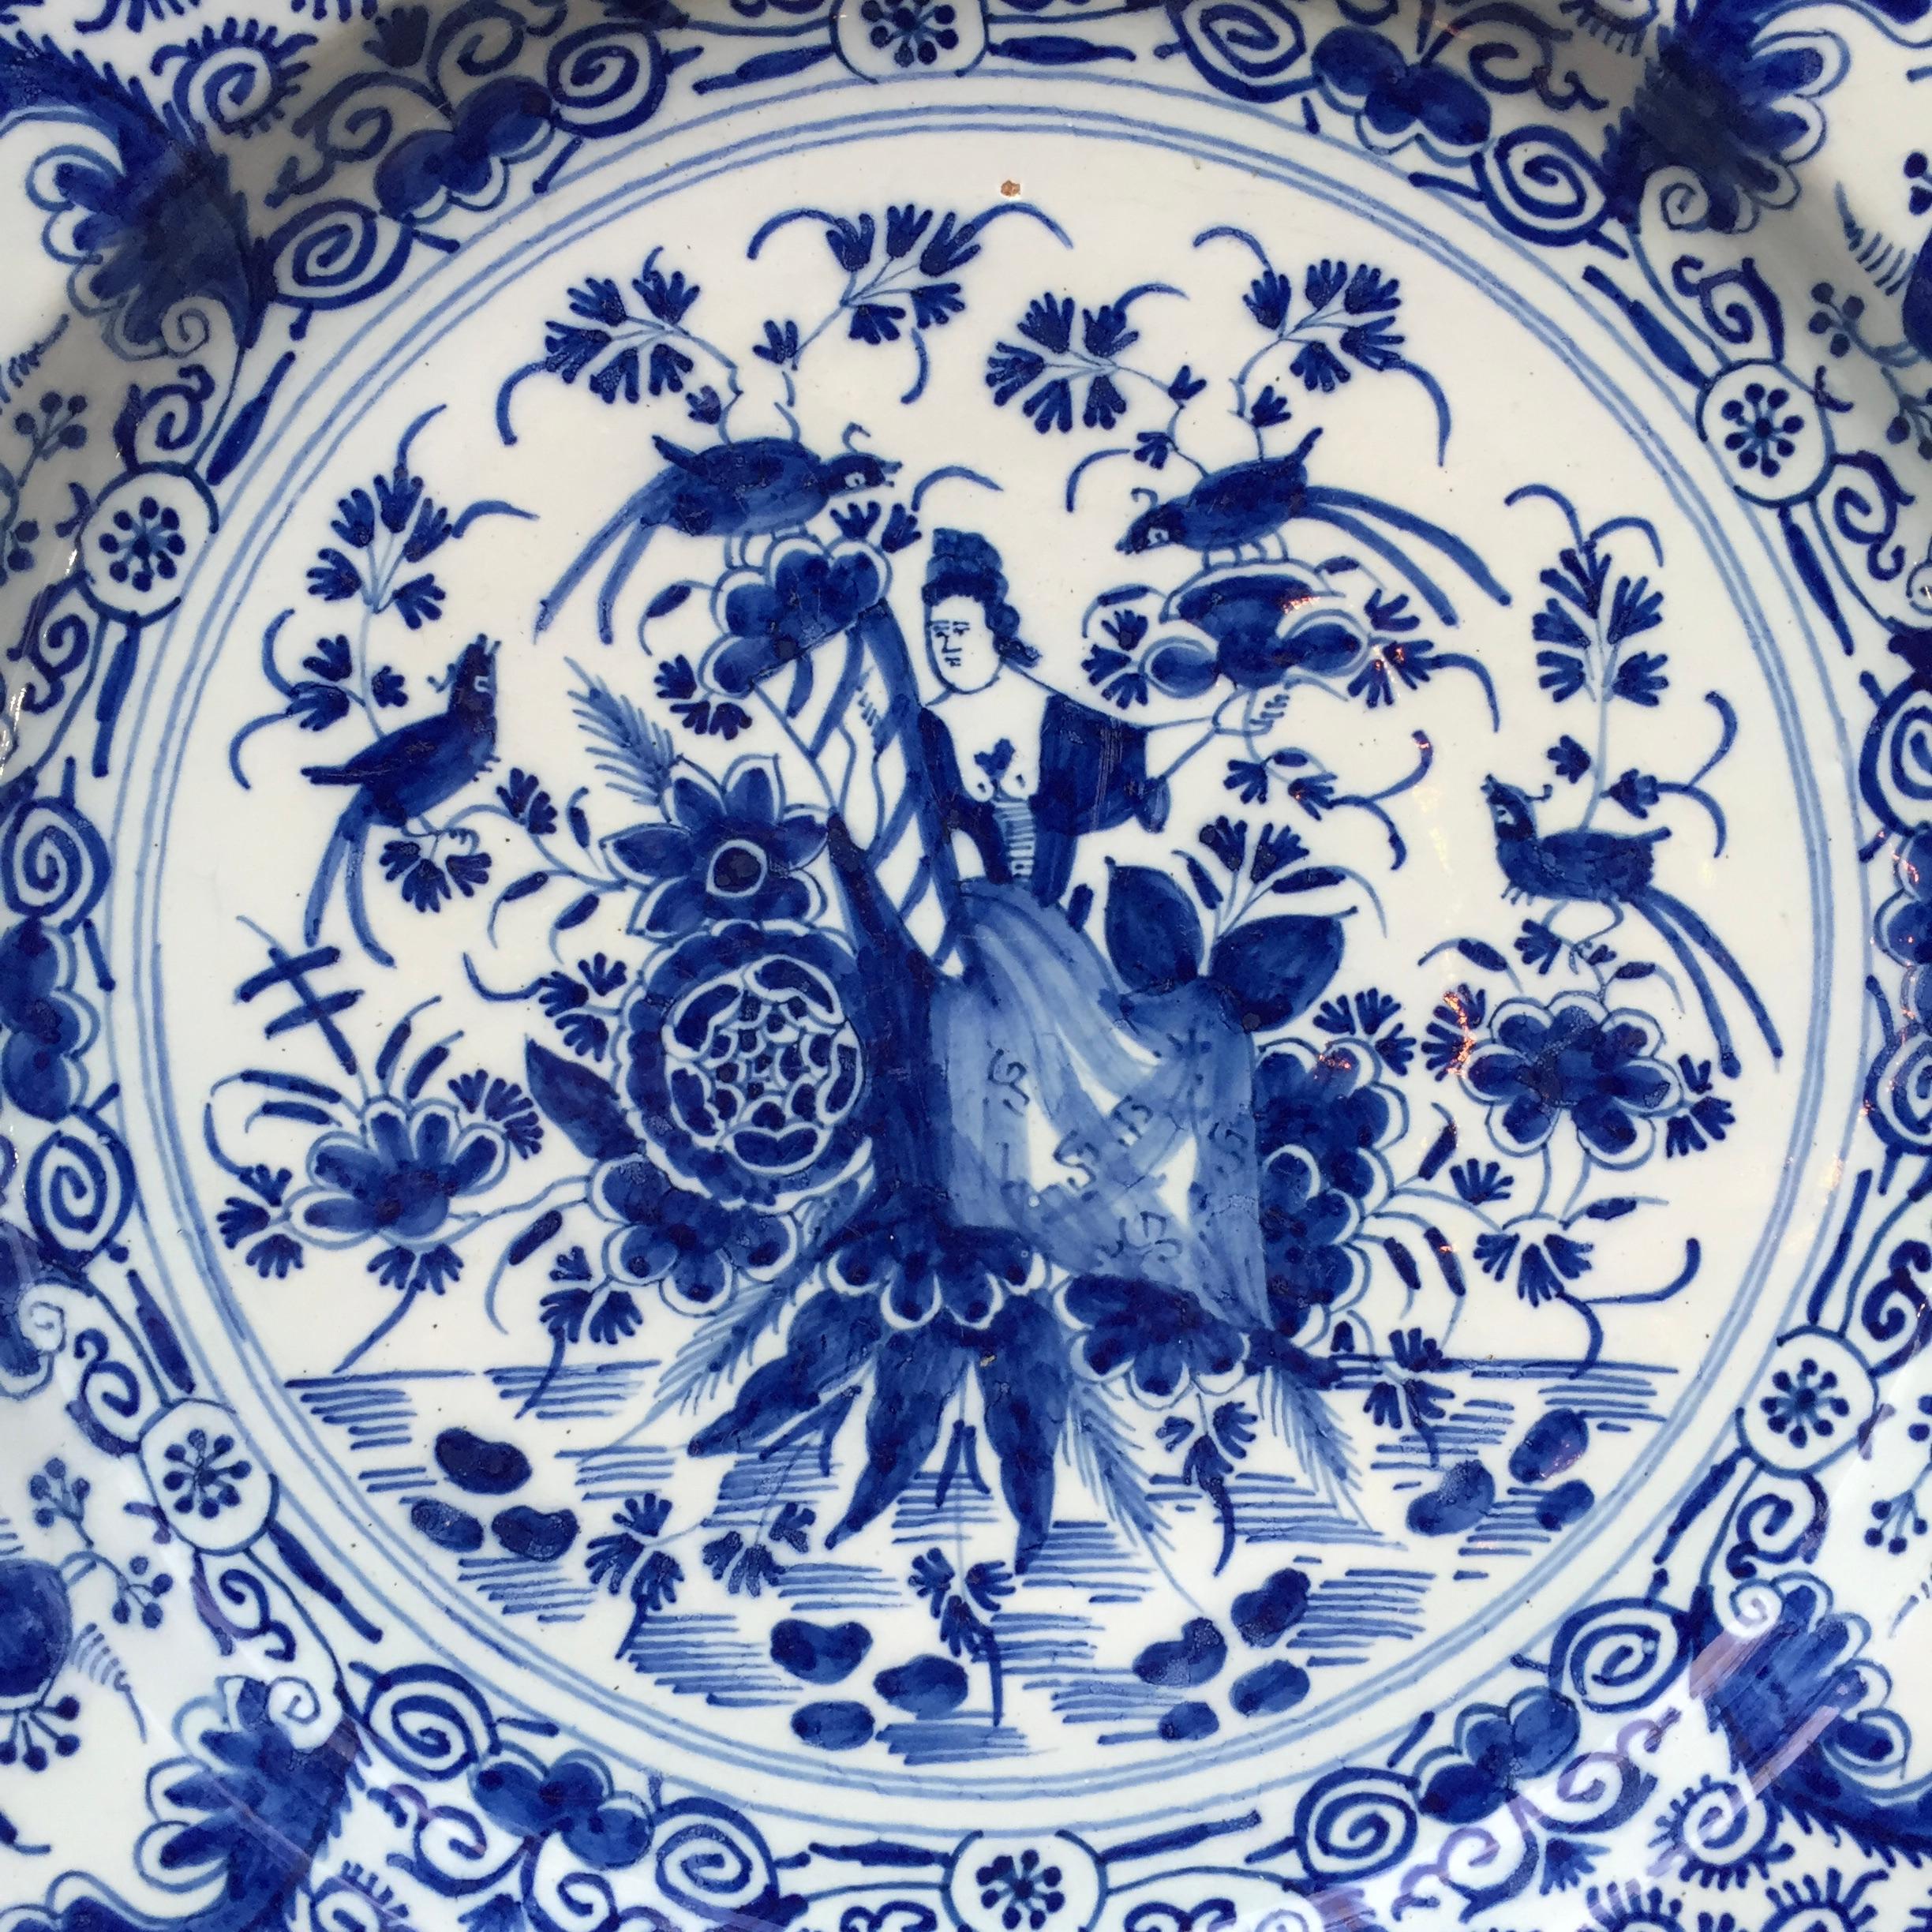 Ville : Delft
Atelier : De proceleyne Bijl (La hache en porcelaine)
Date : circa 1730 - 1760

Une fine assiette bleue et blanche à décor de la Dame de la Fortune, tenant une corne d'abondance, assise dans un jardin avec des fleurs et des